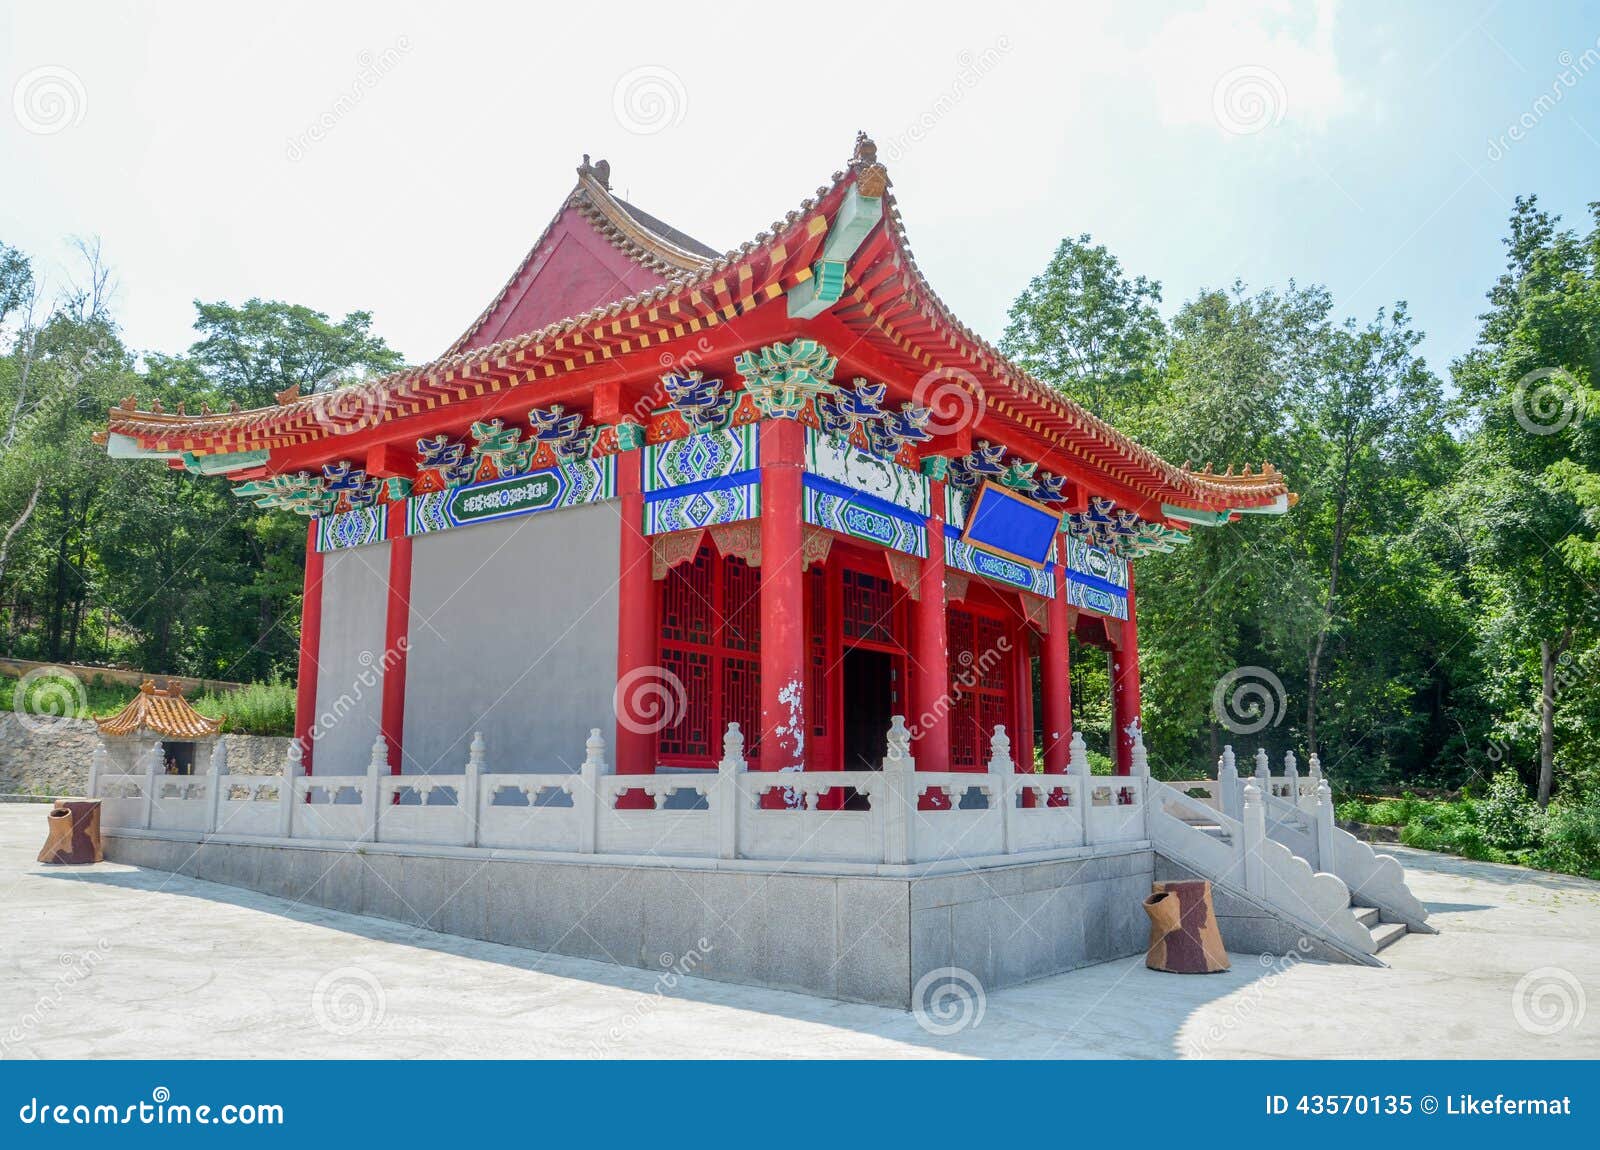 photo stock maison traditionnelle chinoise de lingot image